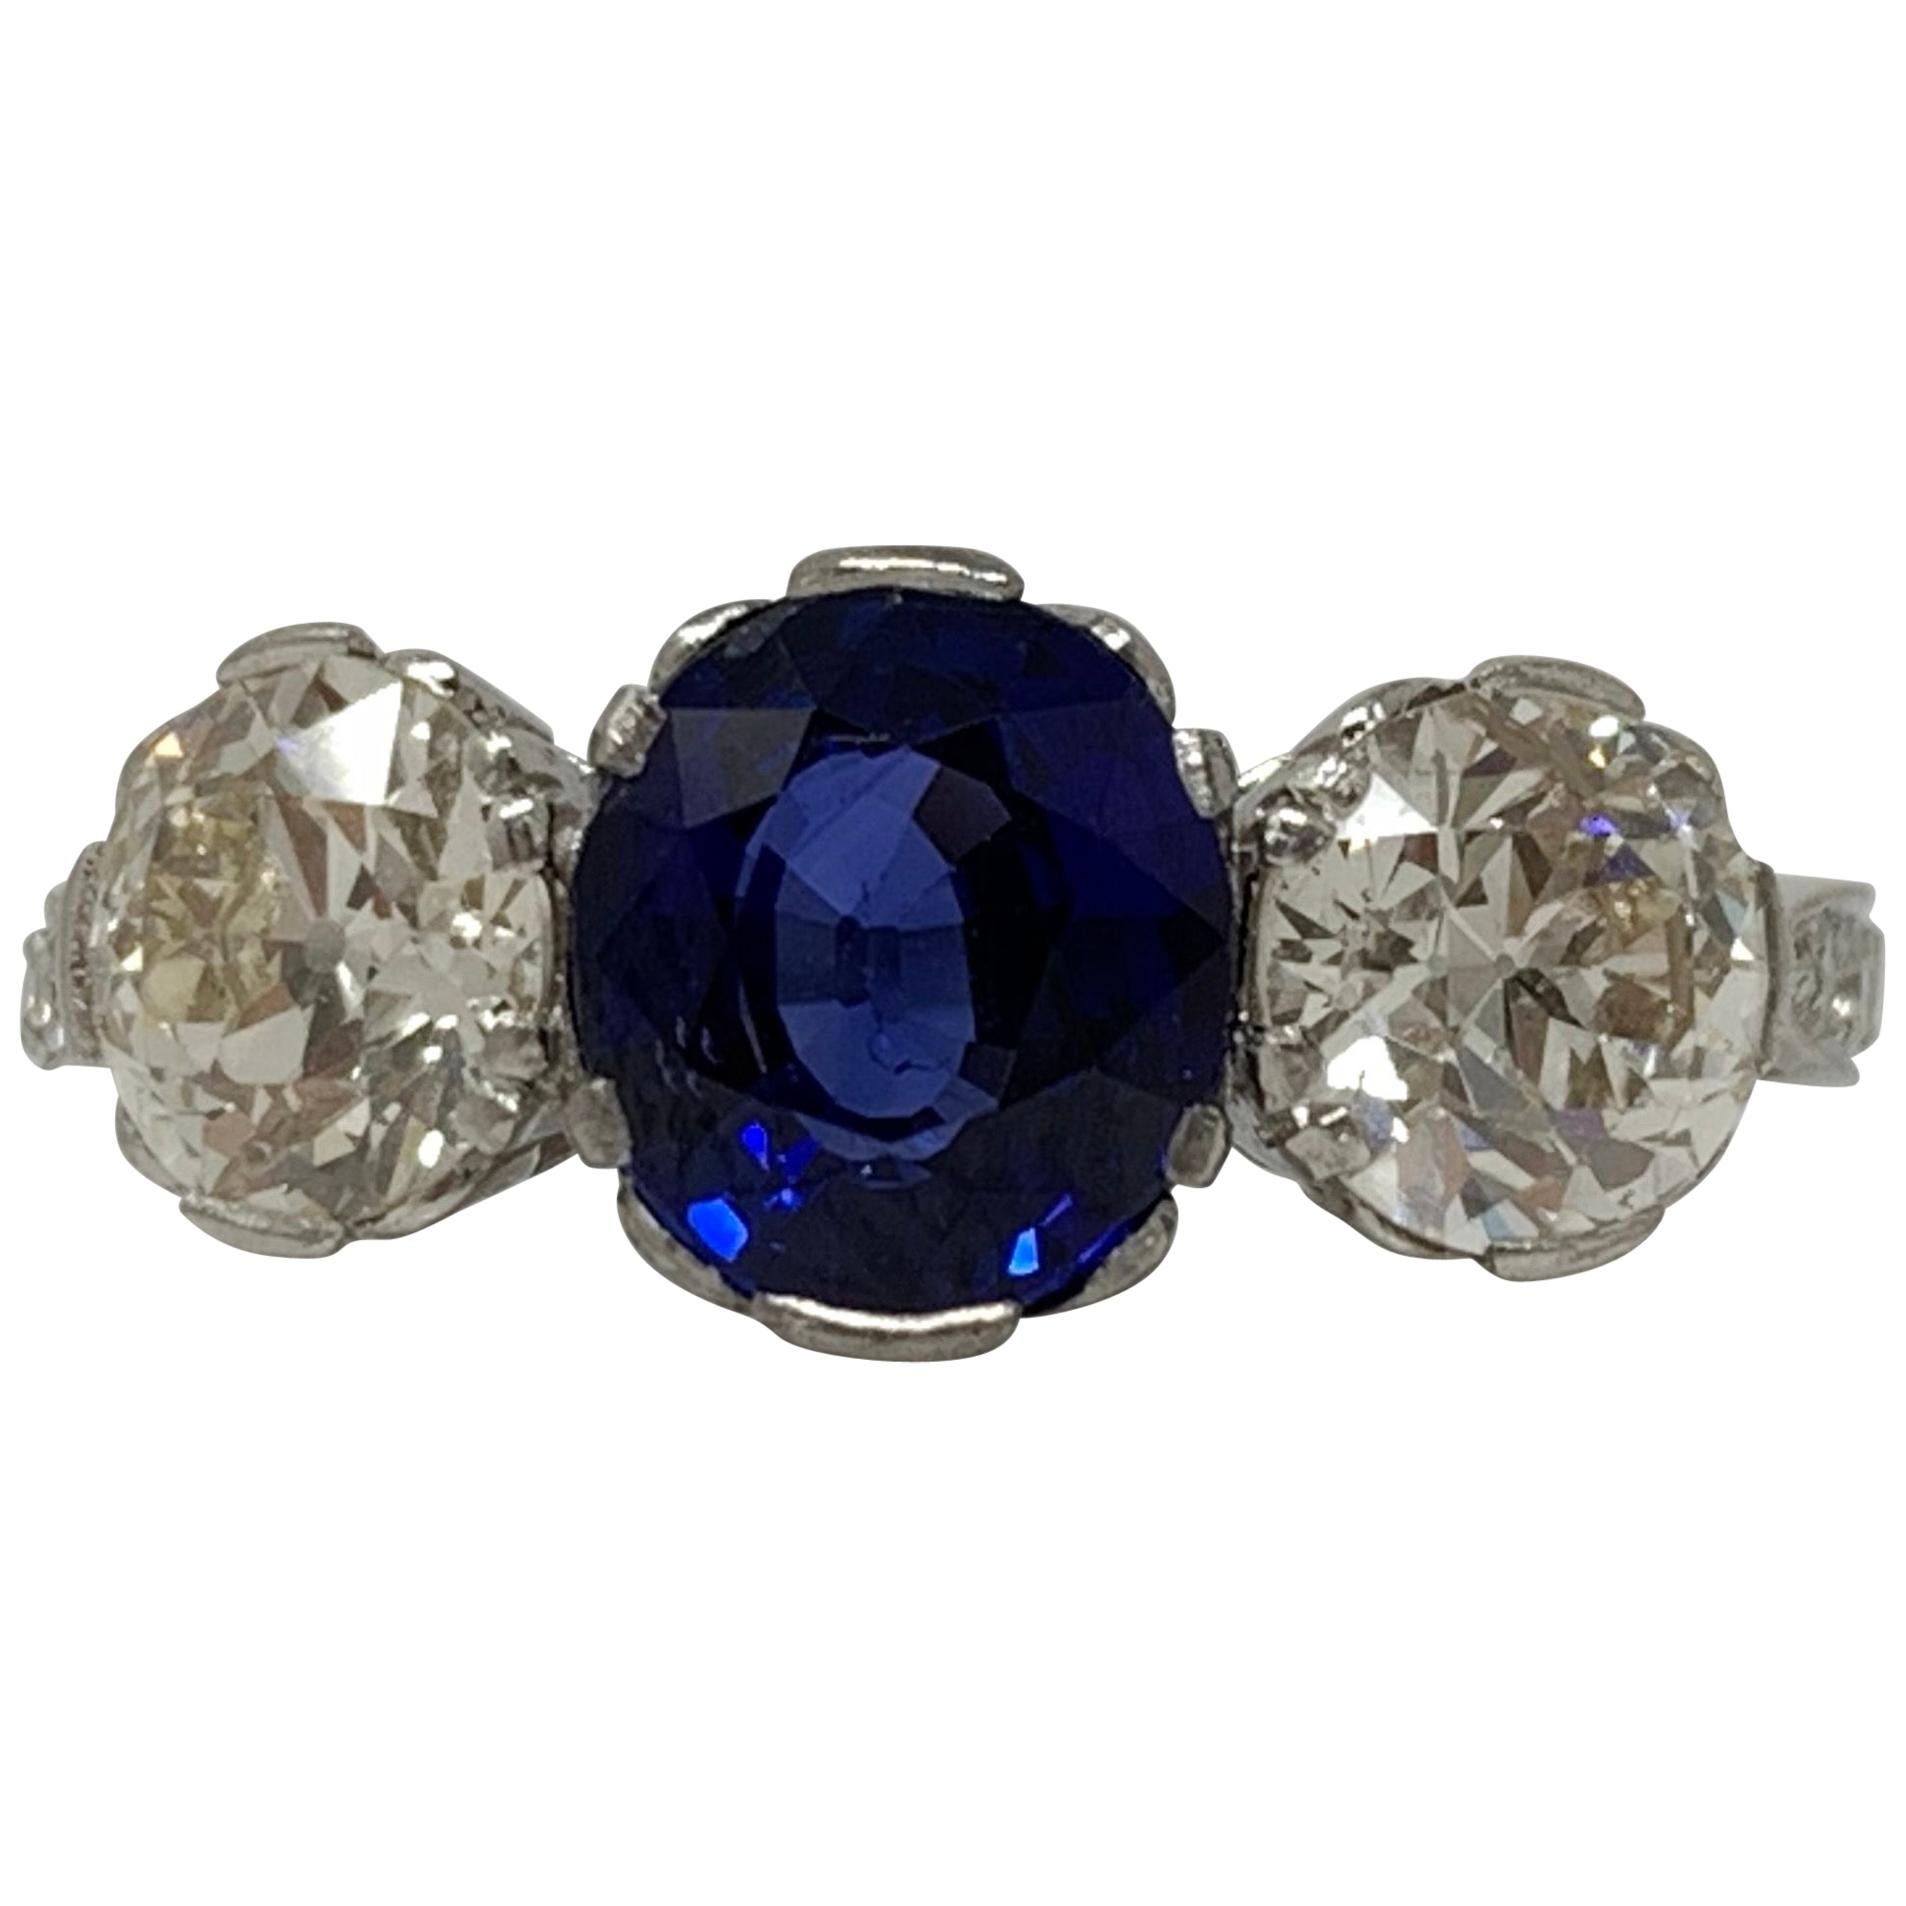 Ovaler Dreisteinring mit blauem Saphir im Mischschliff und weißem Diamanten, AGL-zertifiziert